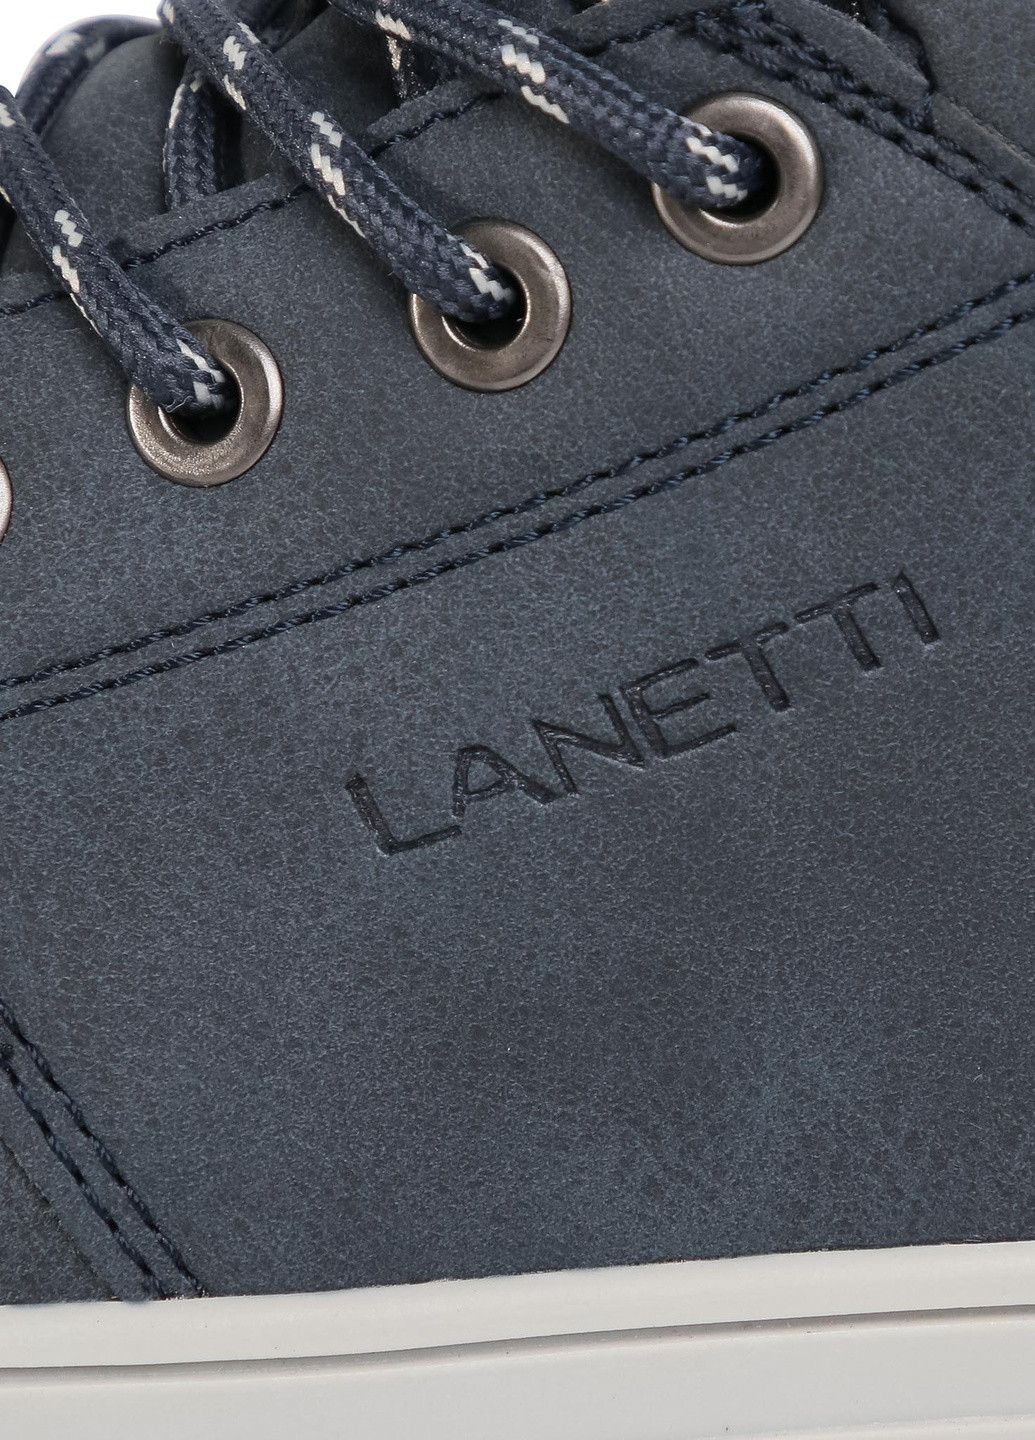 Синие черевики mp07-91246-05 Lanetti